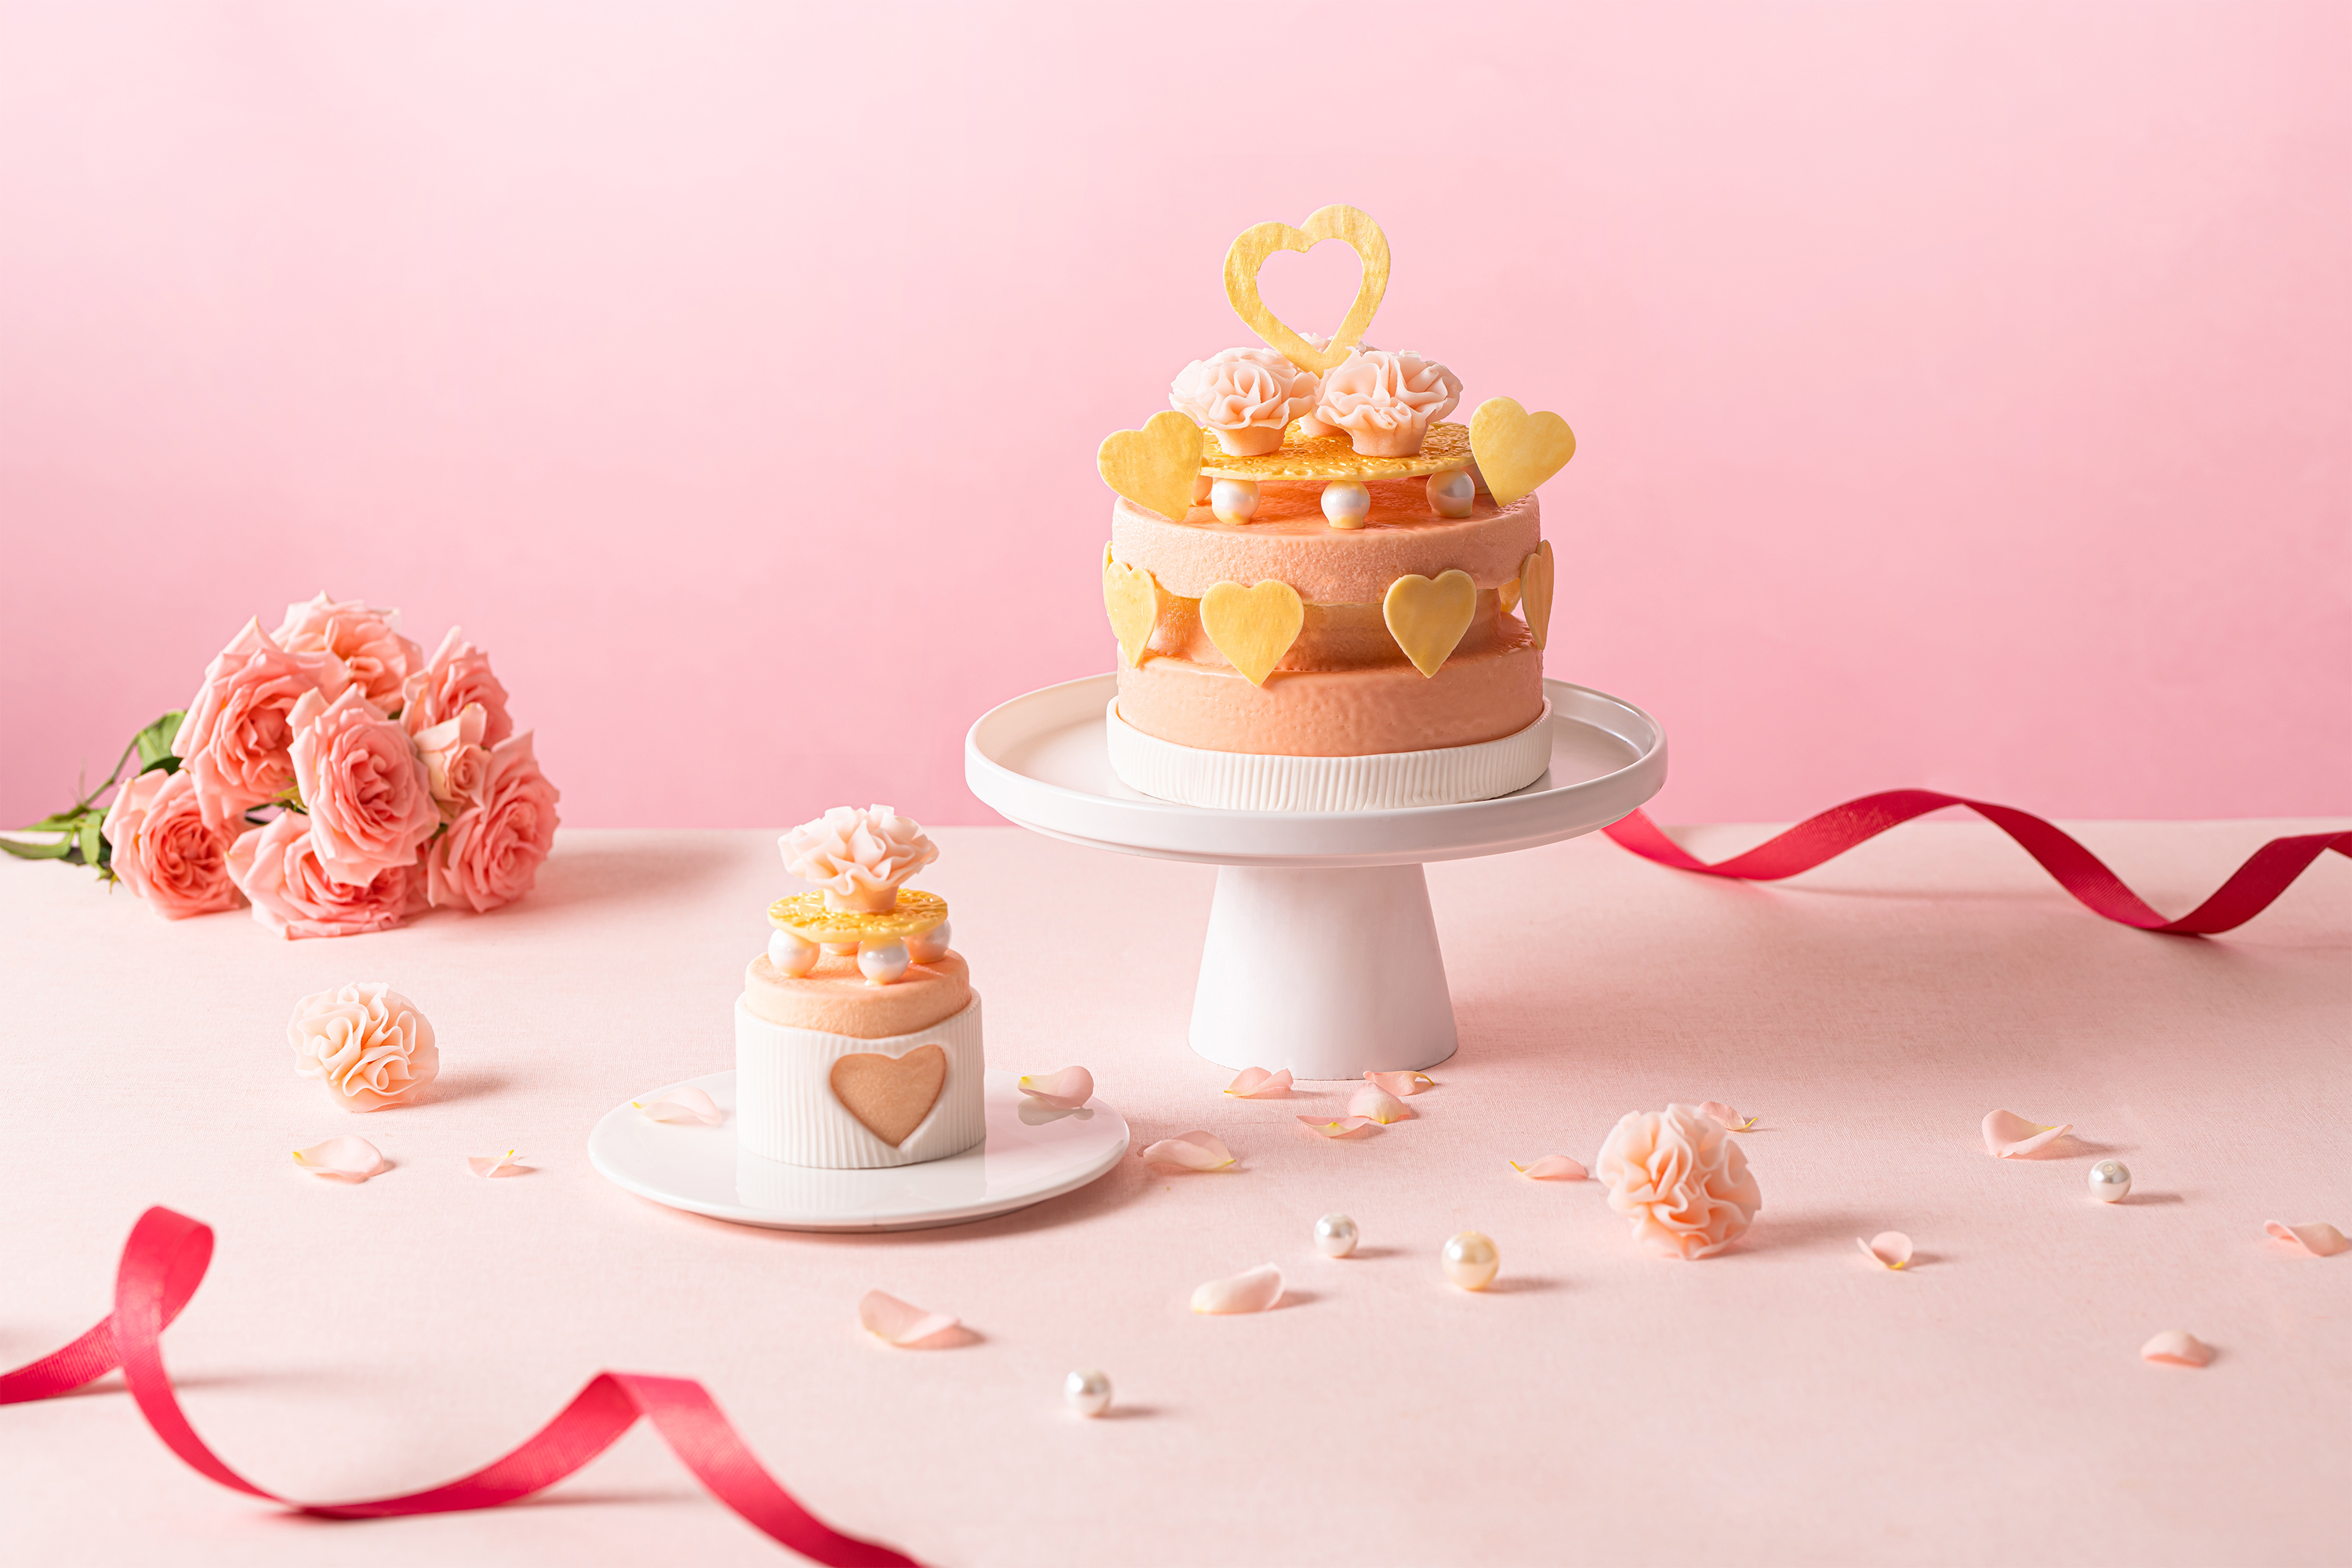 01_「莓漾蜜語」玫瑰蛋糕(1.5磅及迷你版) Whispering Sweet Strawberry Rose Cake (1.5lb and Cut Cake).jpg.jpg